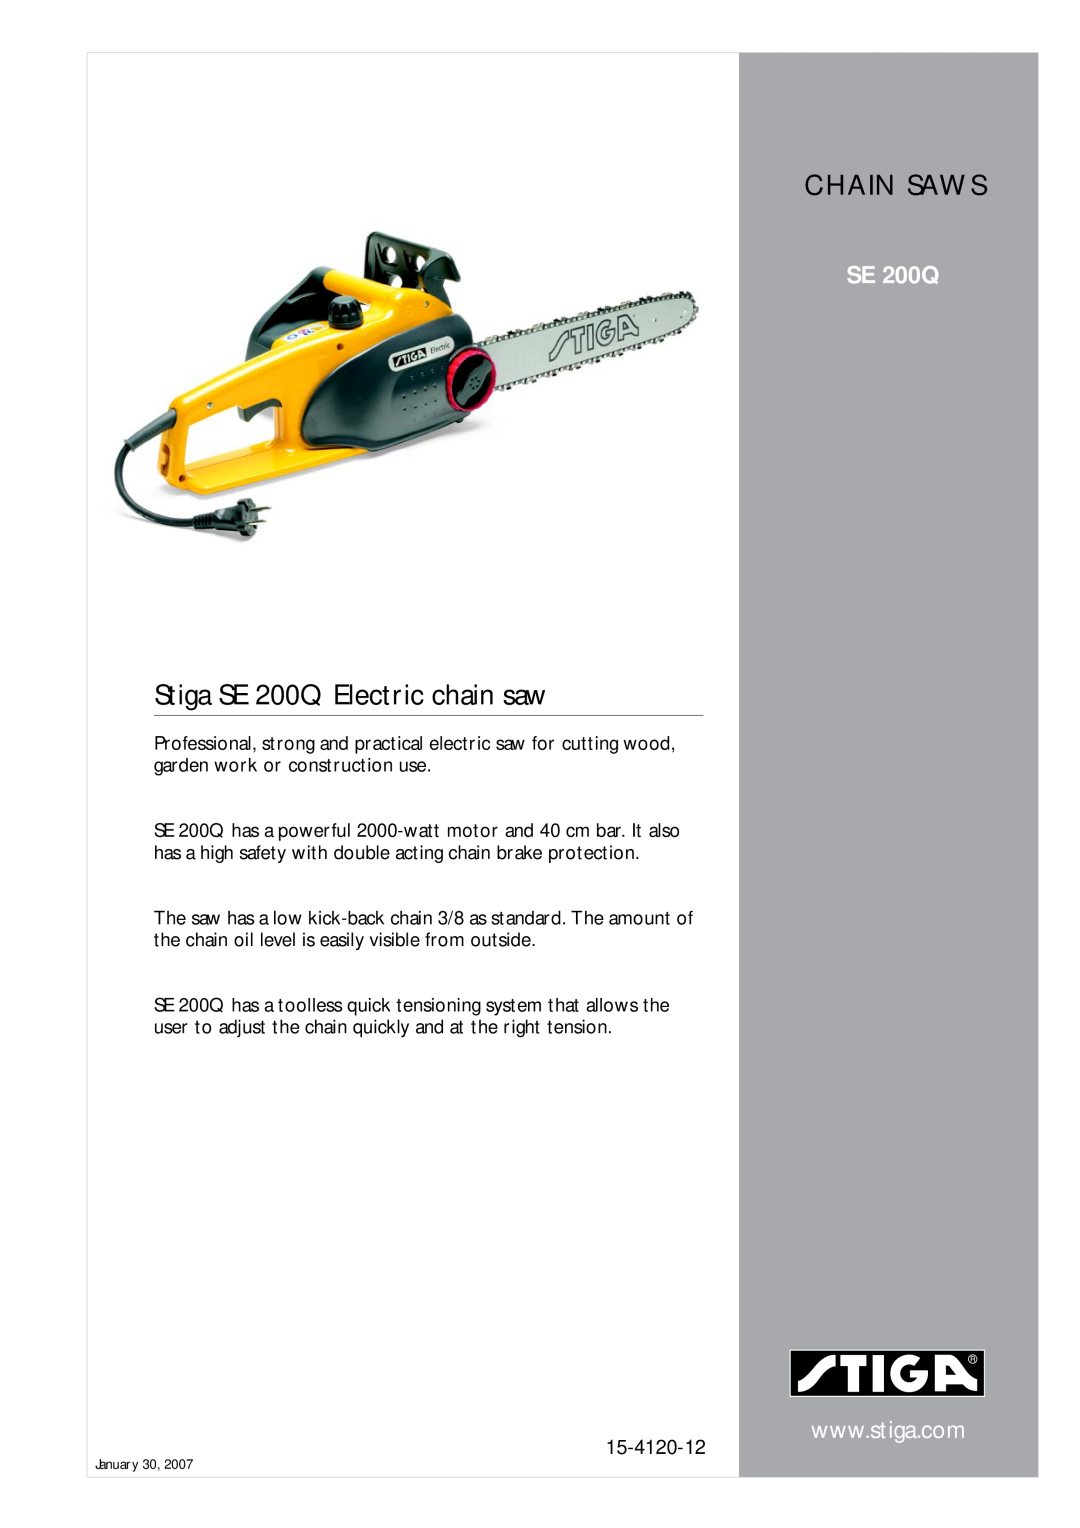 Stiga manual Stiga SE 200Q Electric chain saw, Chain Saws, 15-4120-12 